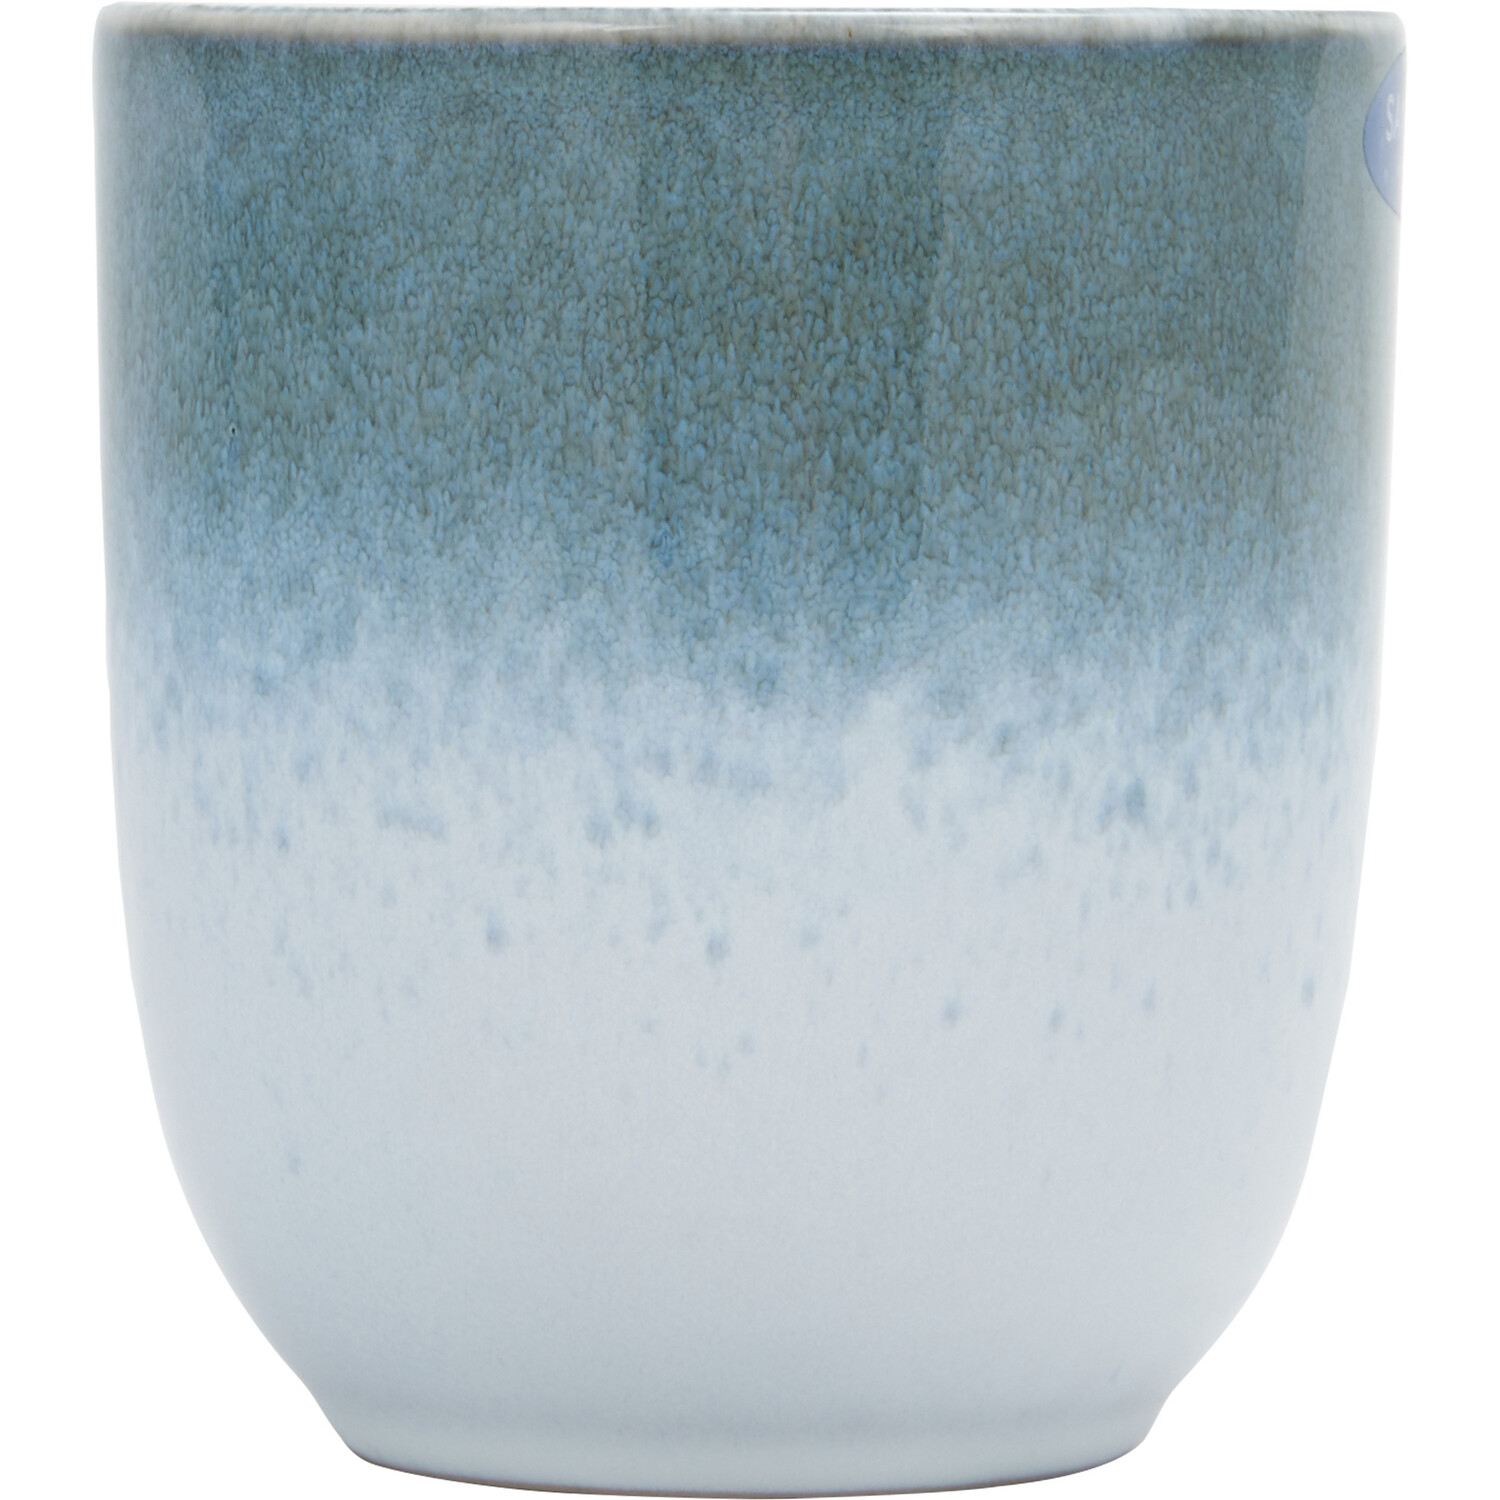 Santorini Reactive Glaze Mug - Blue Image 2